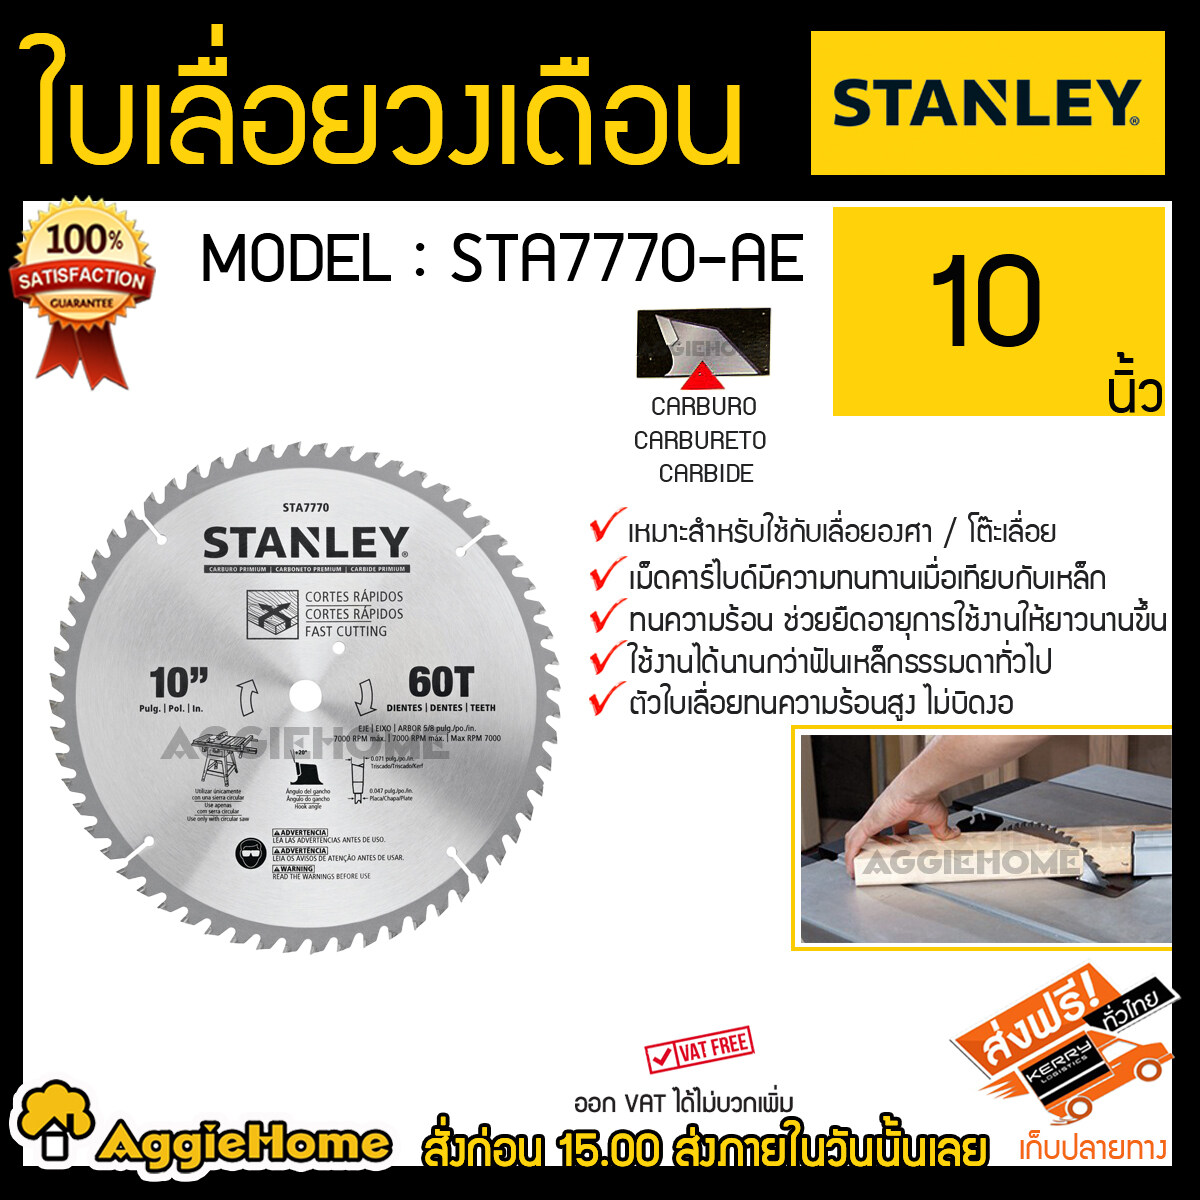 STANLEY ใบเลื่อยวงเดือน รุ่น STA7770-AE